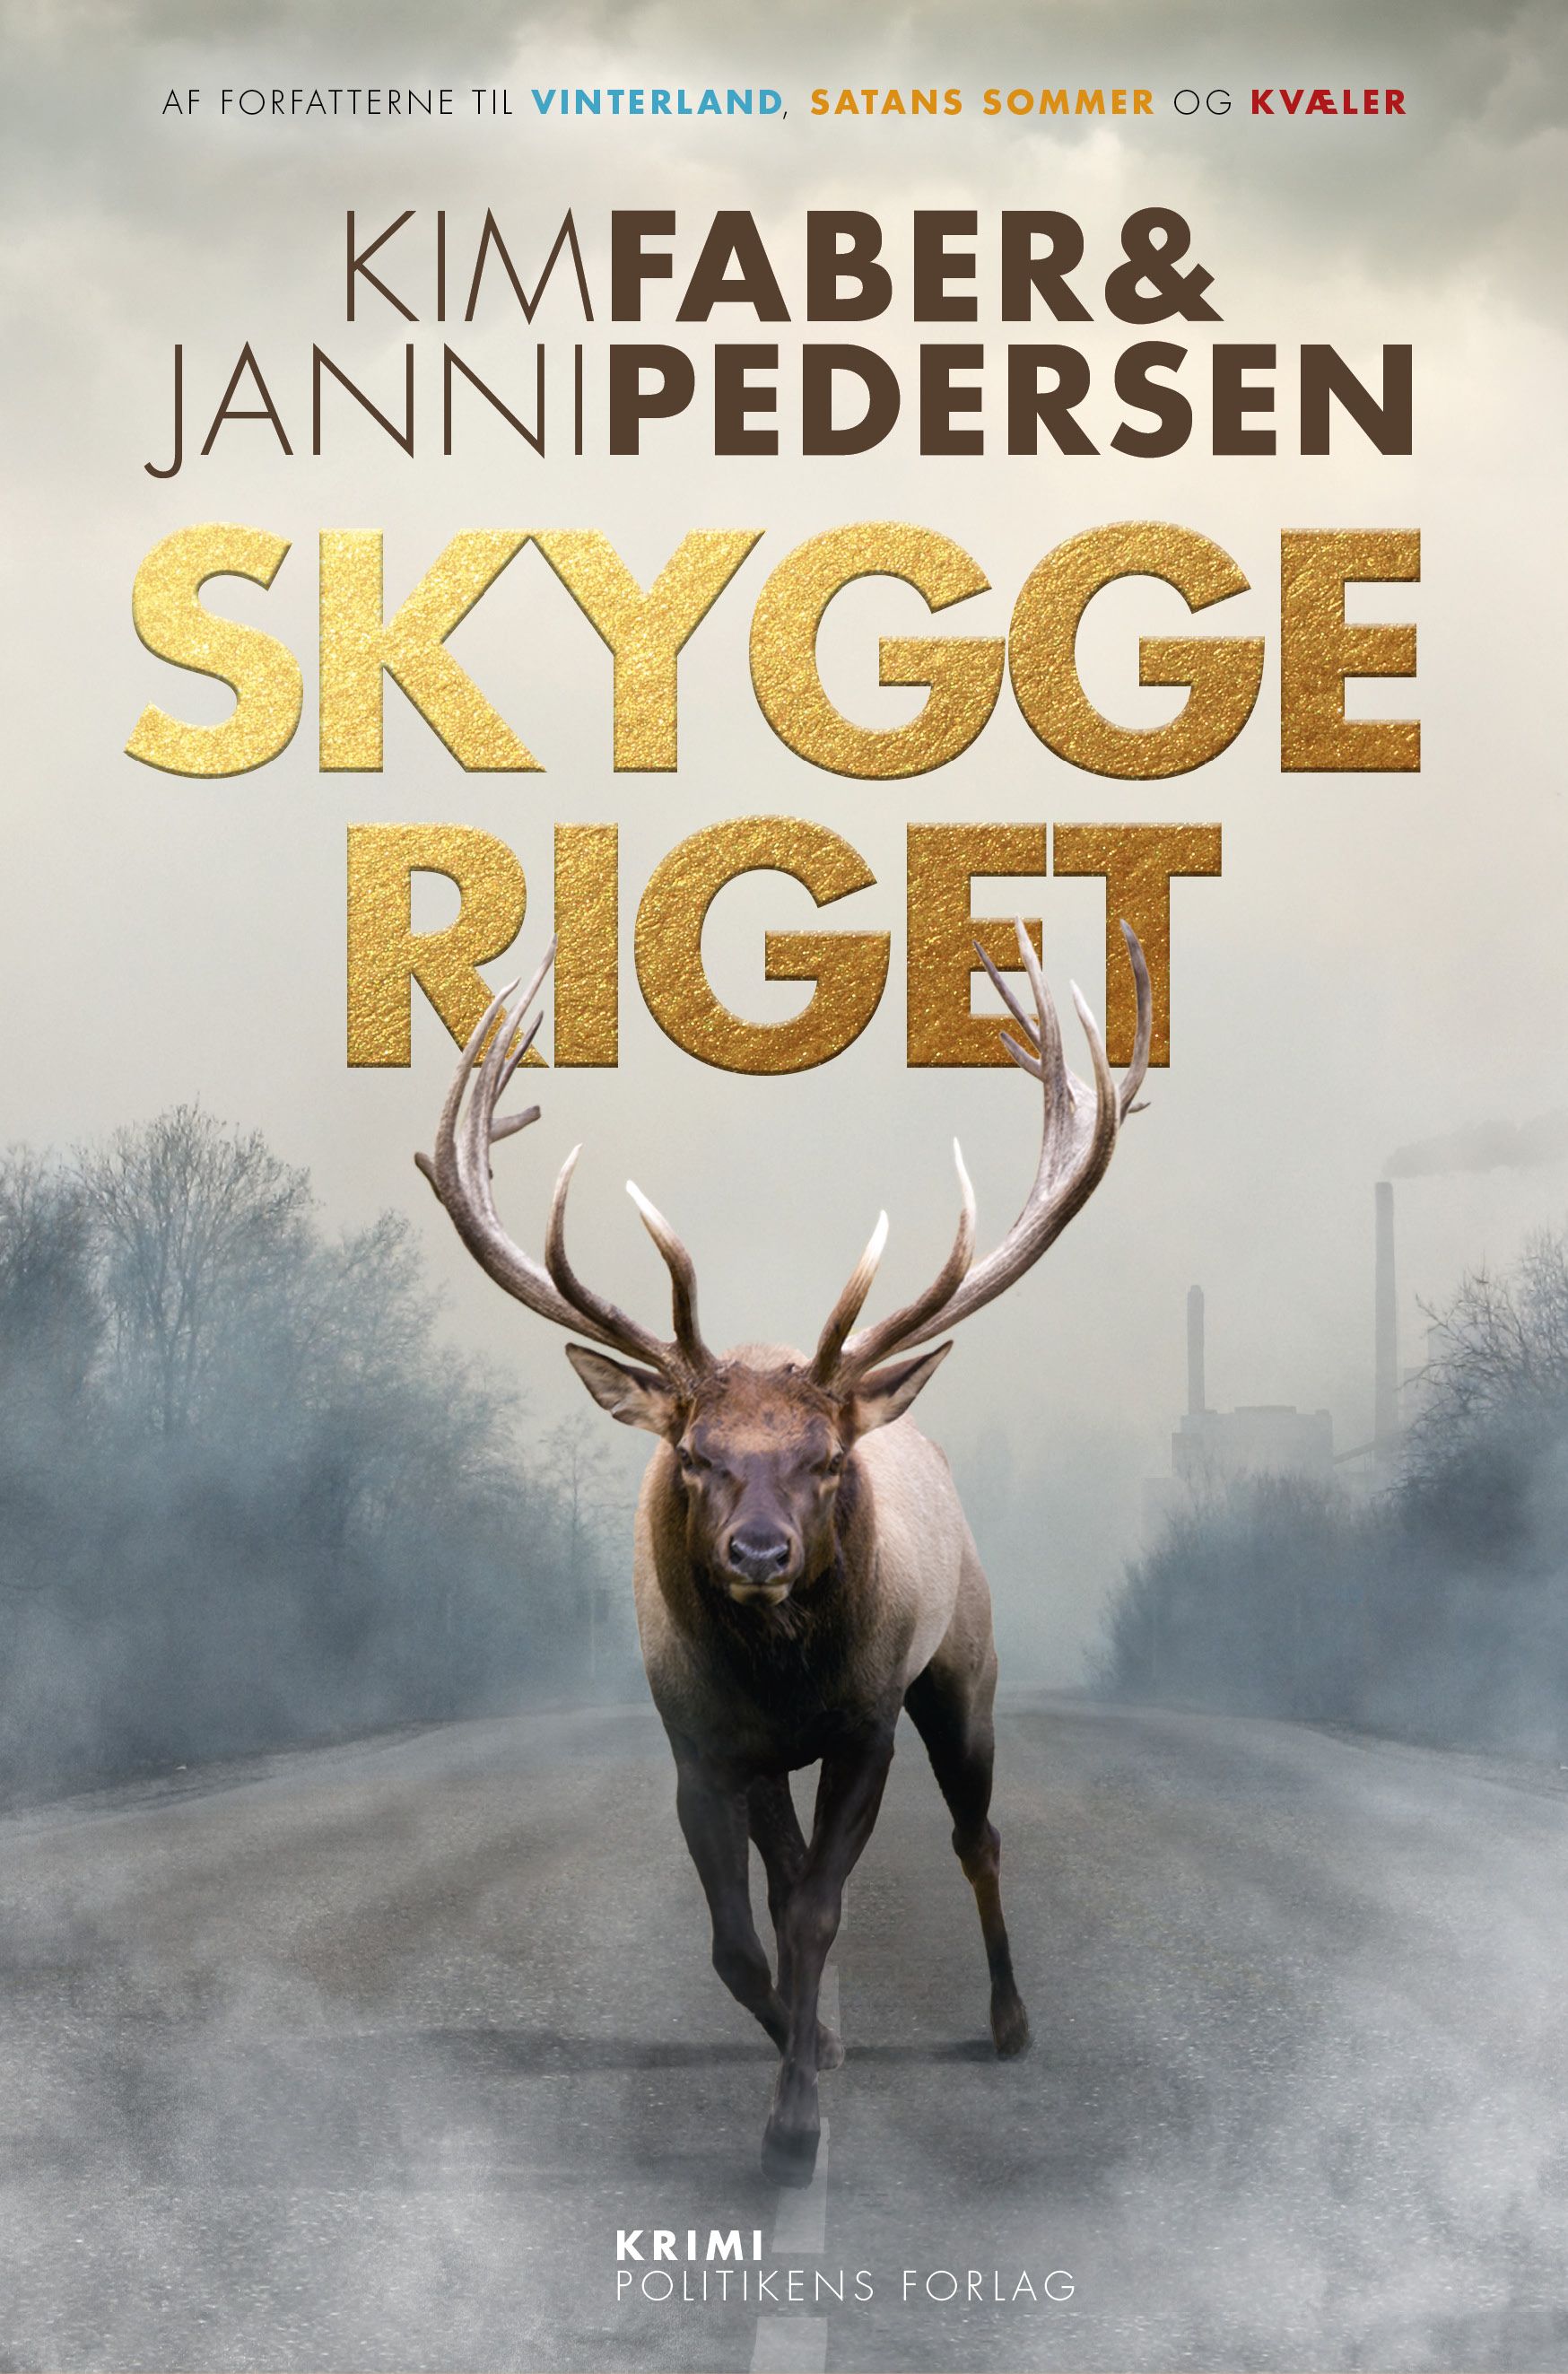 Skyggeriget, e-bog af Kim Faber, Janni Pedersen